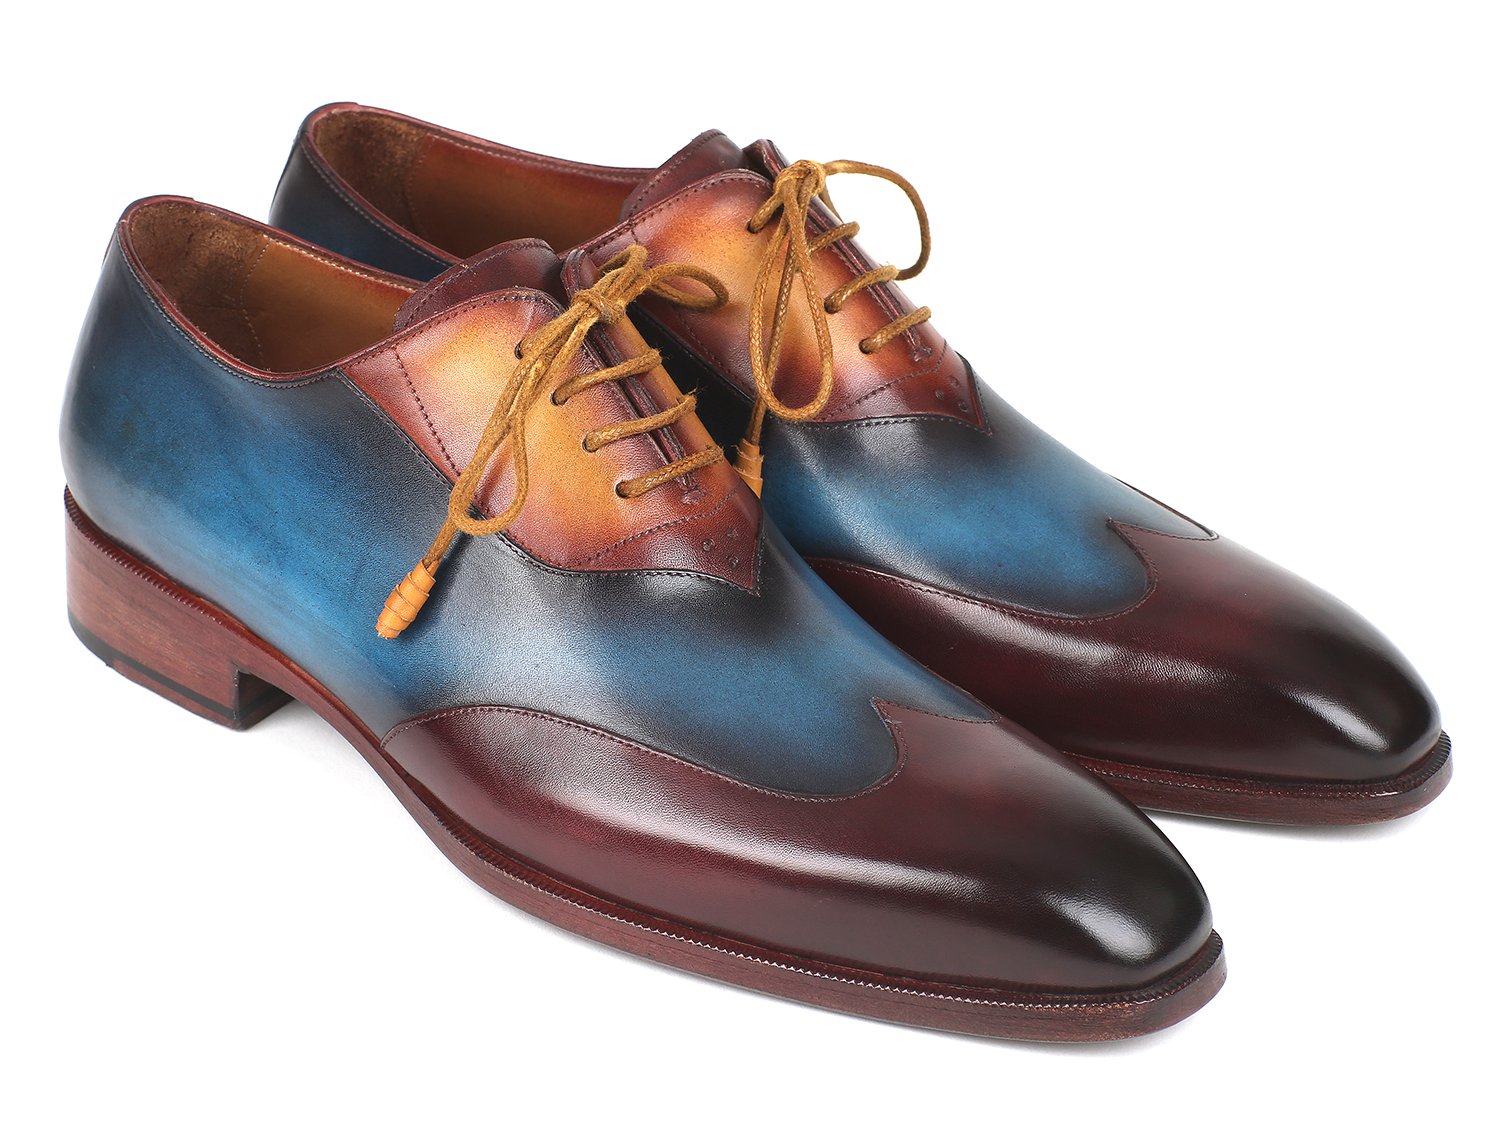 Paul Parkman "AL3249TU" Burgundy / Blue / Camel Wingtip Oxfords Shoes.